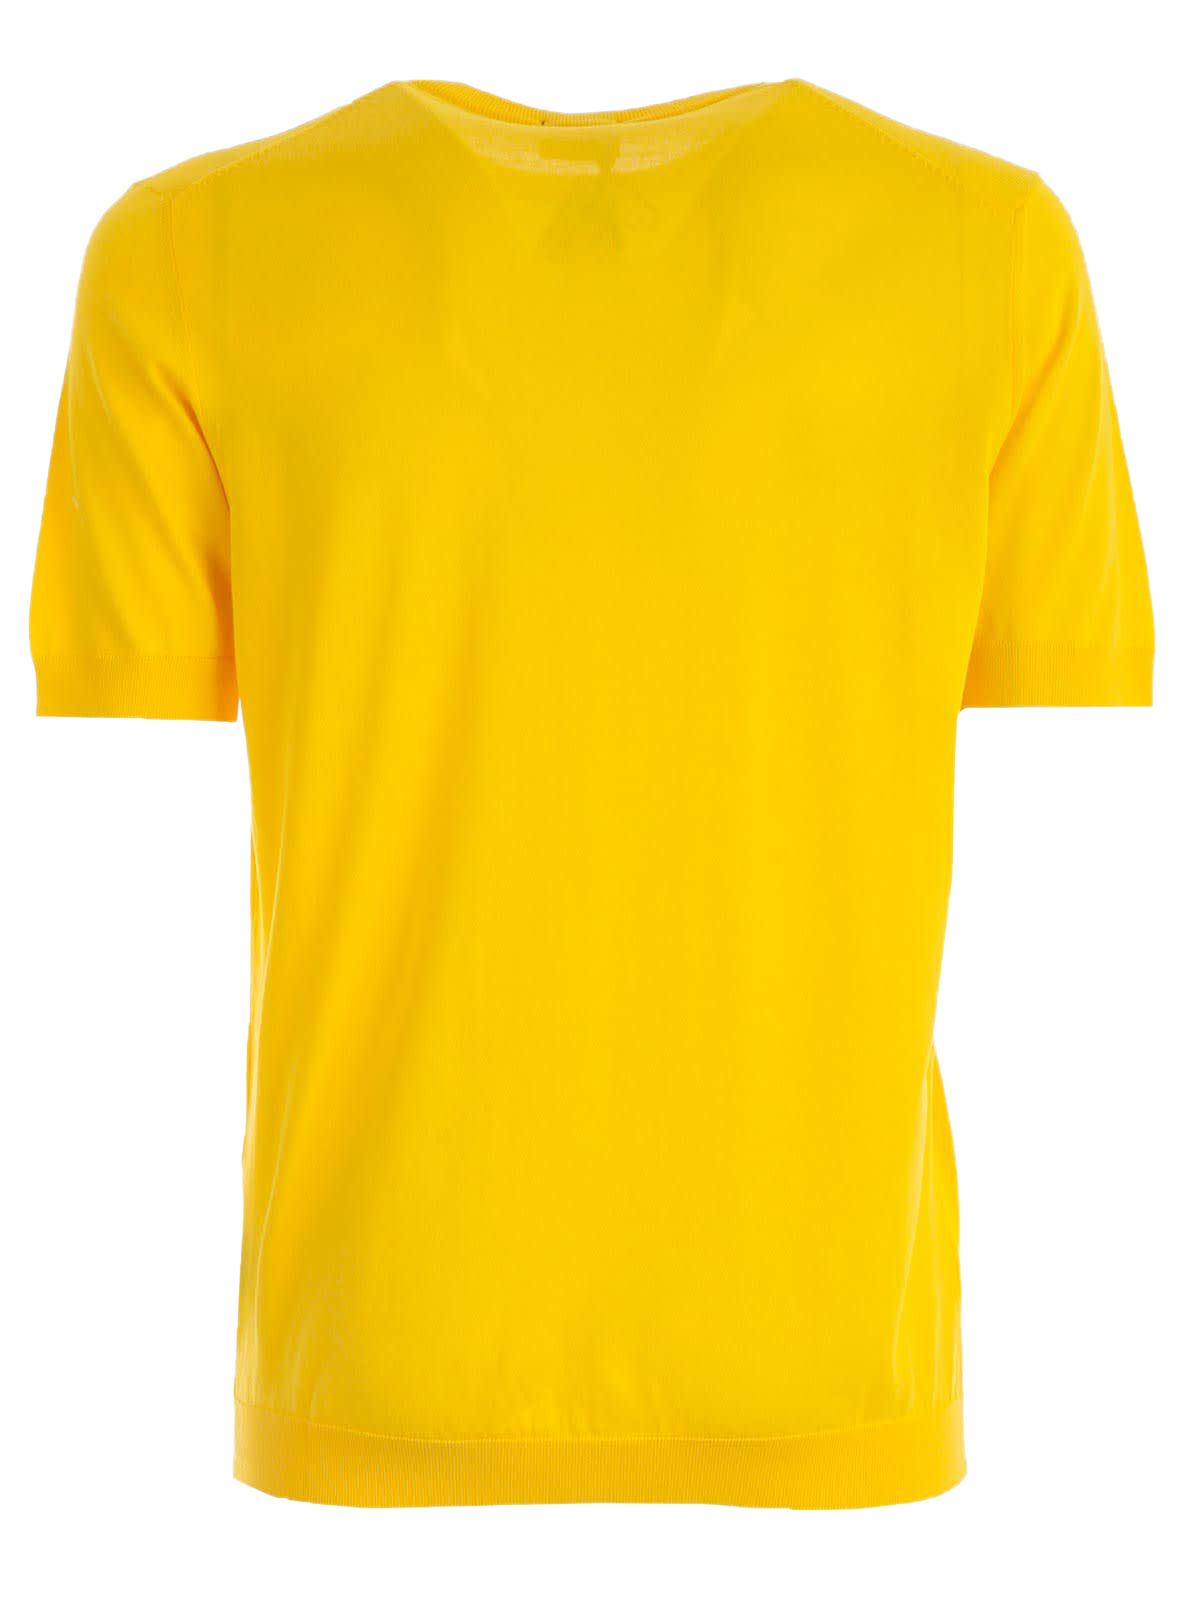 T-shirt kuning polos Gambar Transparan